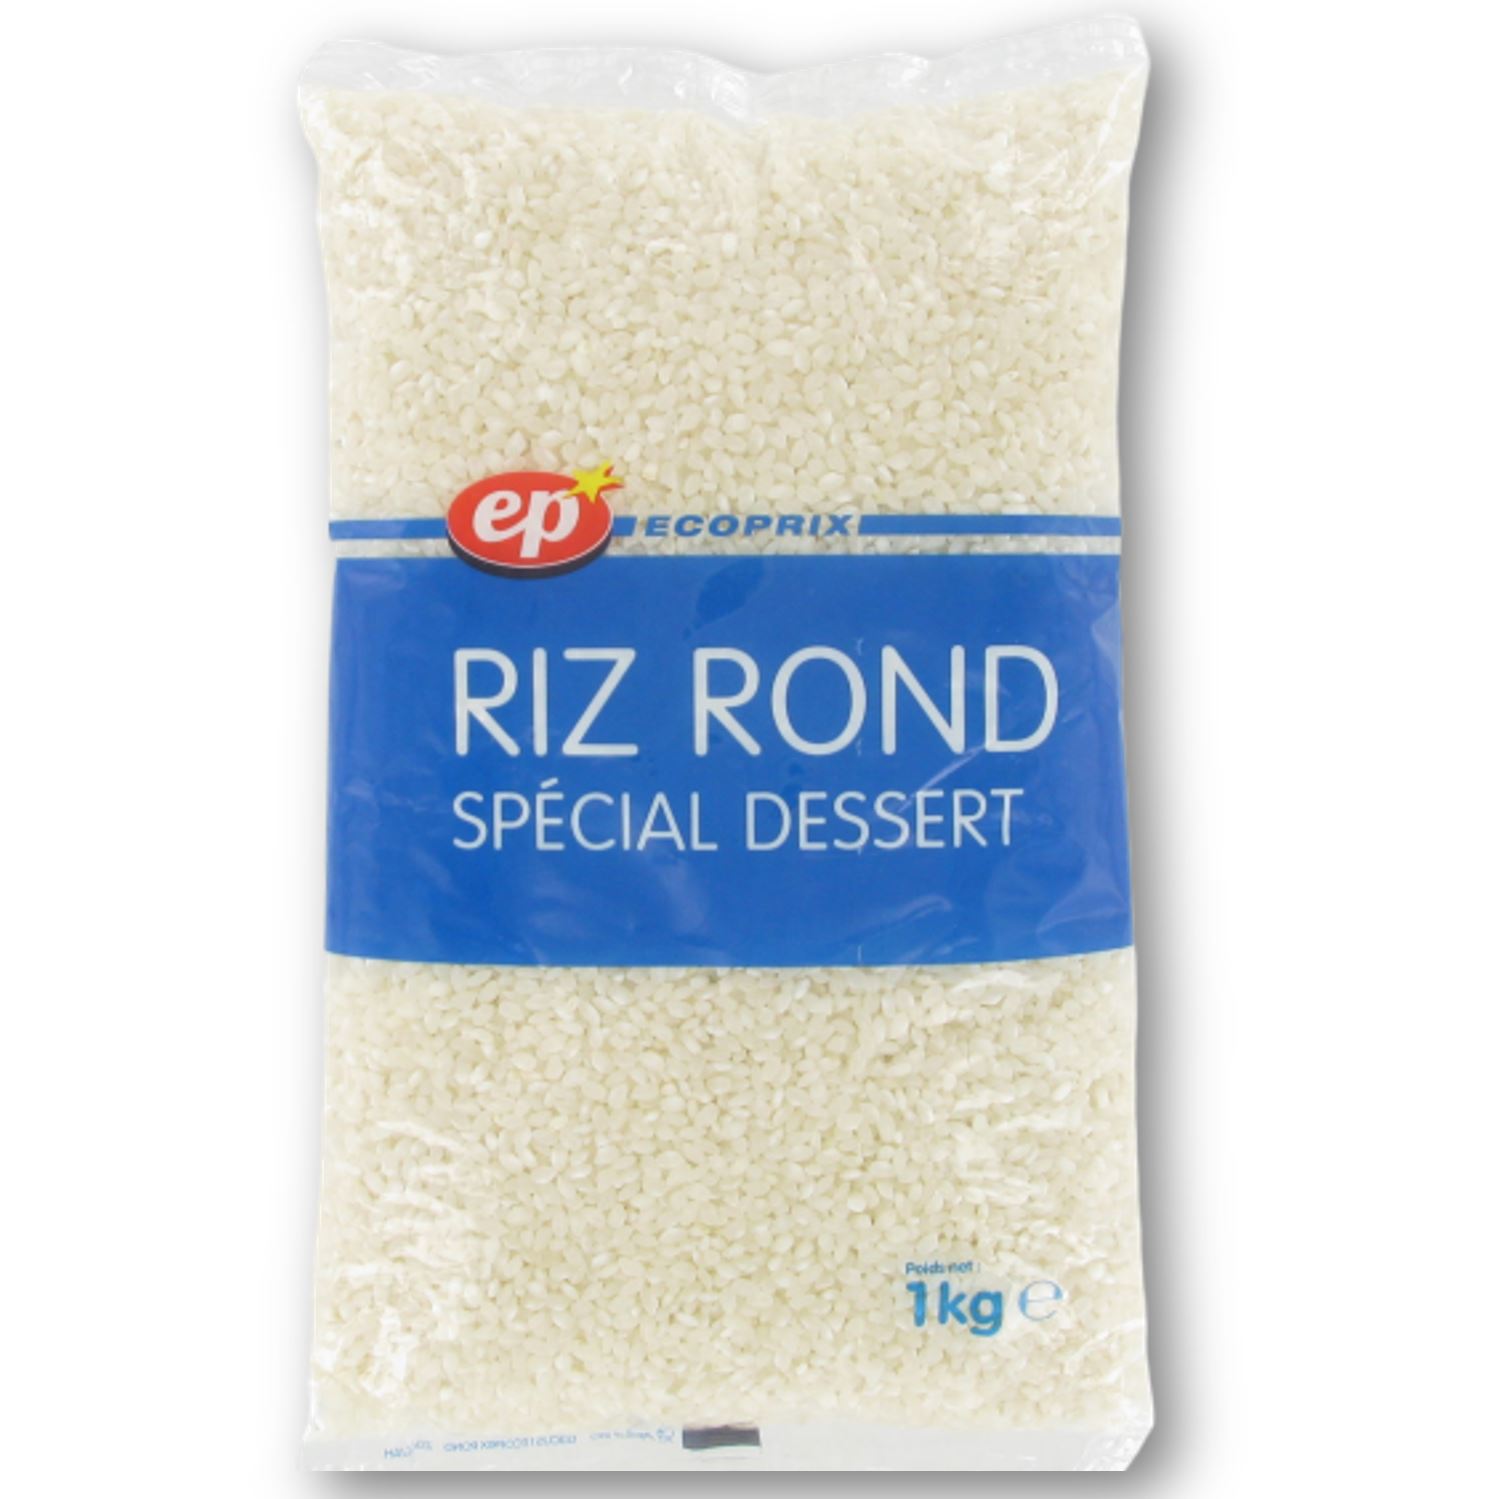 LOT DE 24 - UNCLE BEN'S : Riz long grain bio en sachets cuisson